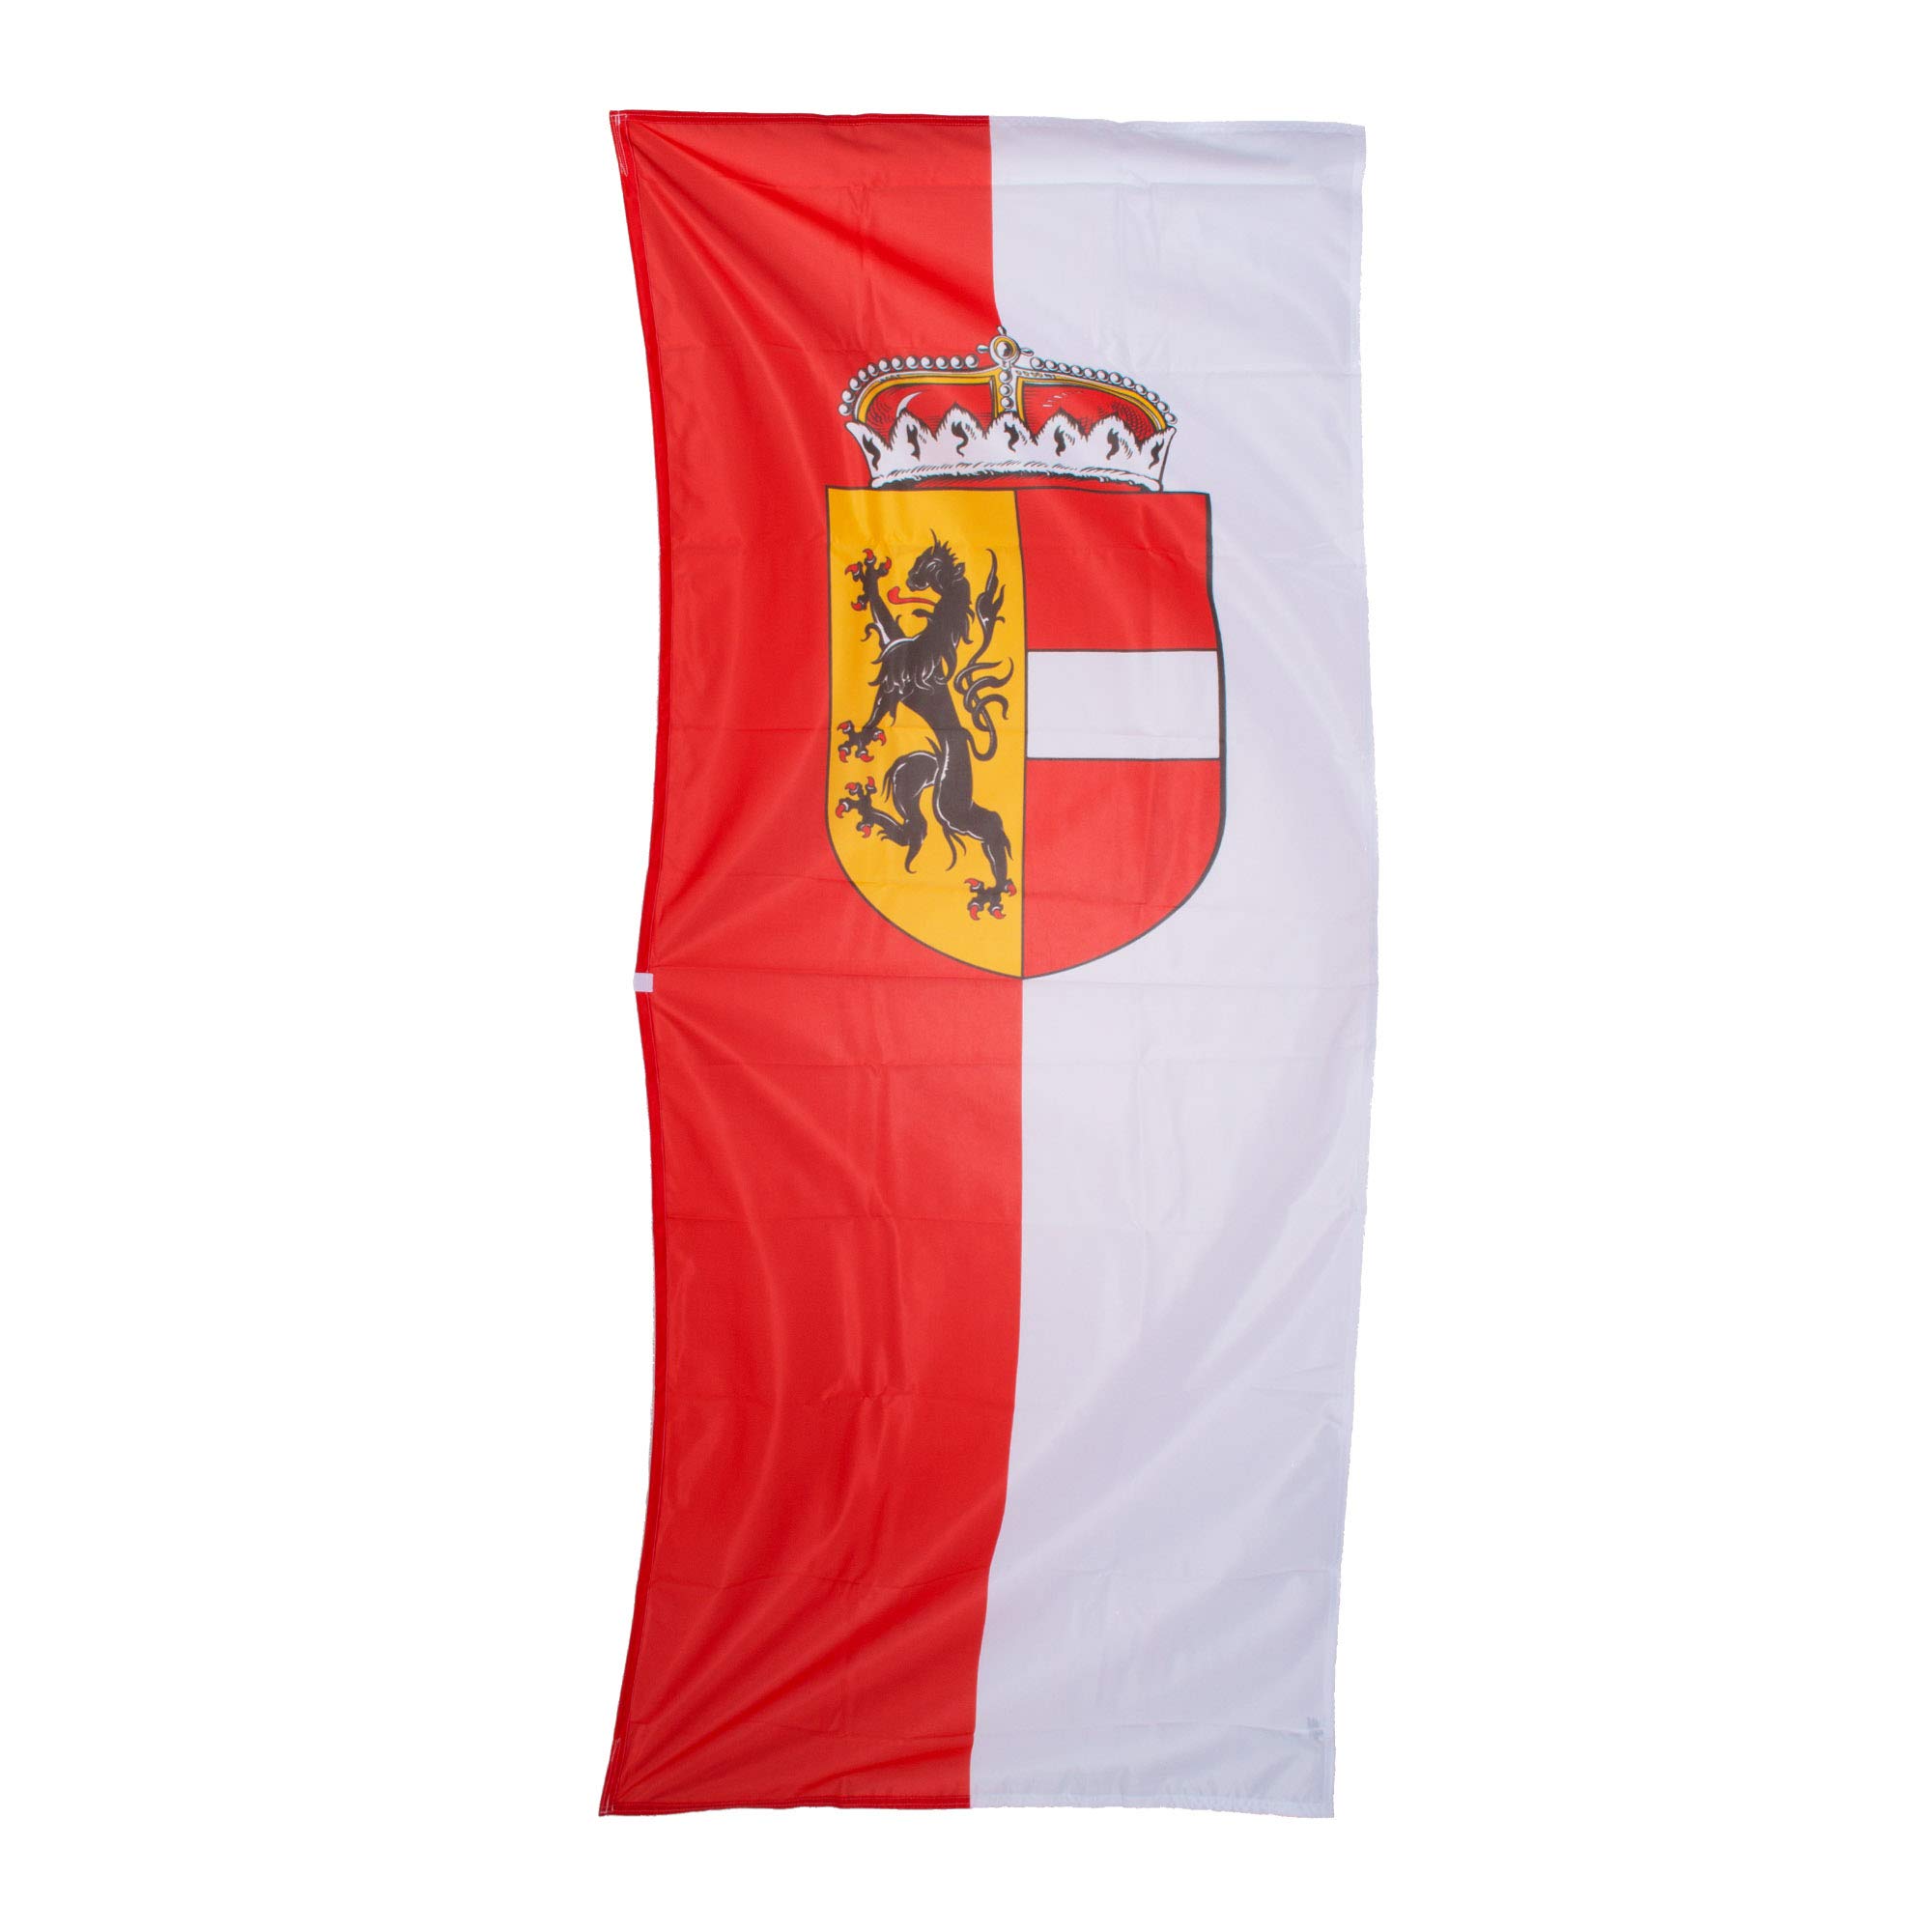 Fahnen Kössinger, Bannerfahne mit Hohlsaum, fertig montiert an Querstab, Fahne Bundesland Salzburg, Bannerfahne mit Wappen, hochwertiger Siebdruck, rot-weiß, 80 x 200 cm, 1,6 m² Fläche